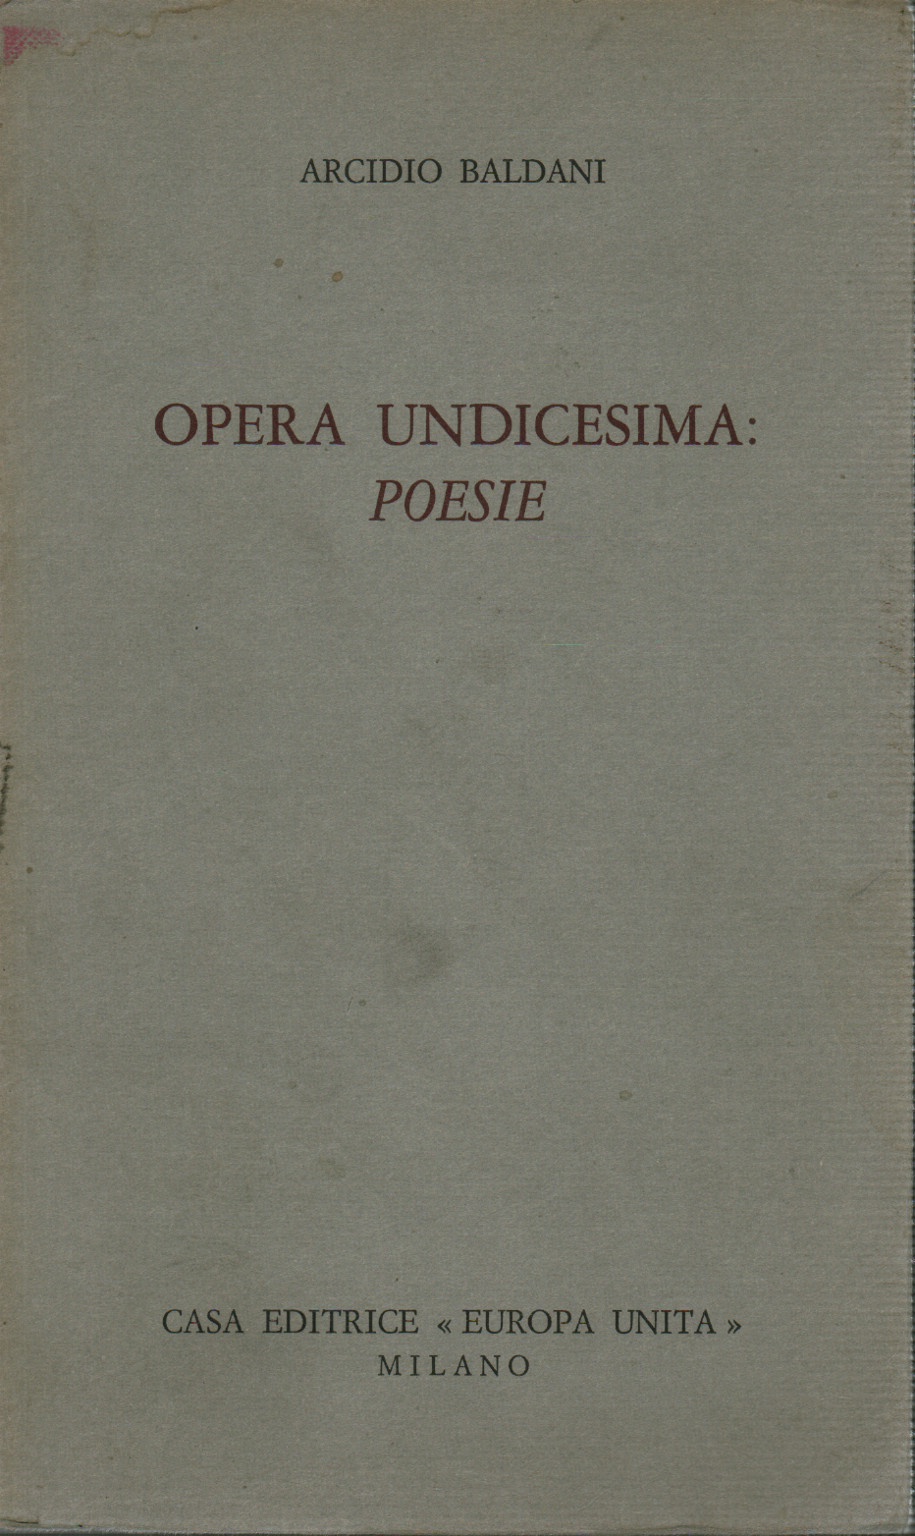 Opera Undicesima: Poesie, s.a.